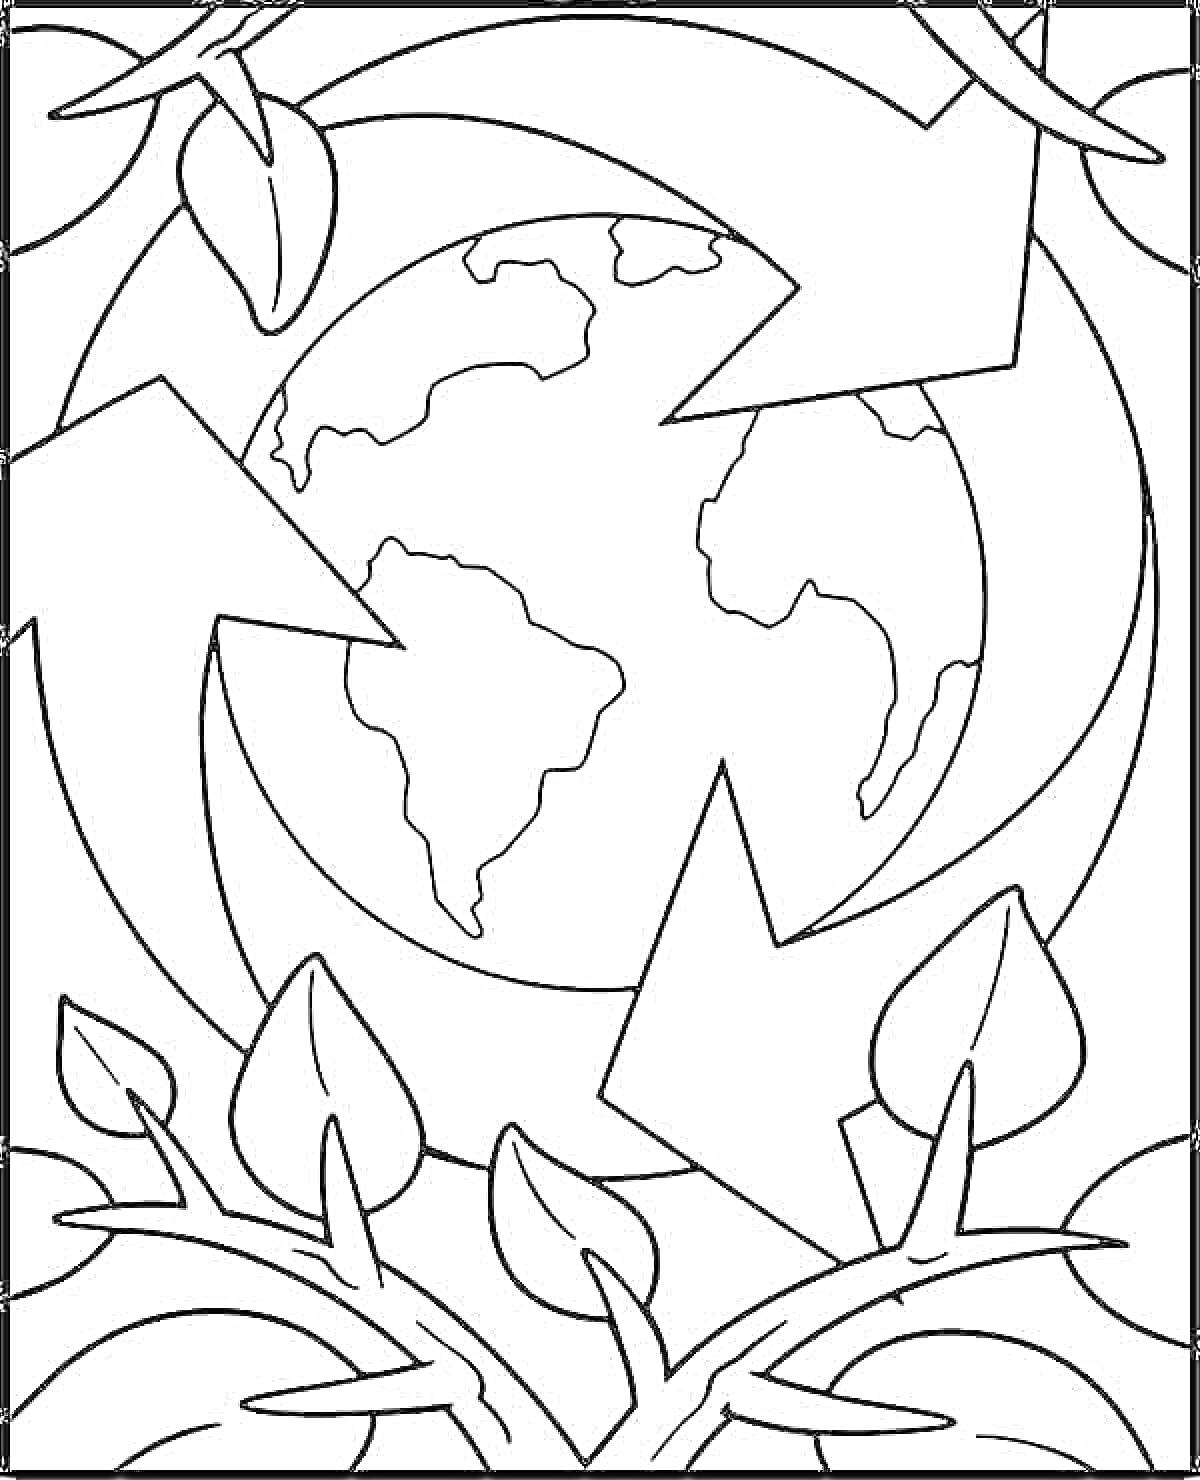 Раскраска Планета с листьями и стрелками переработки